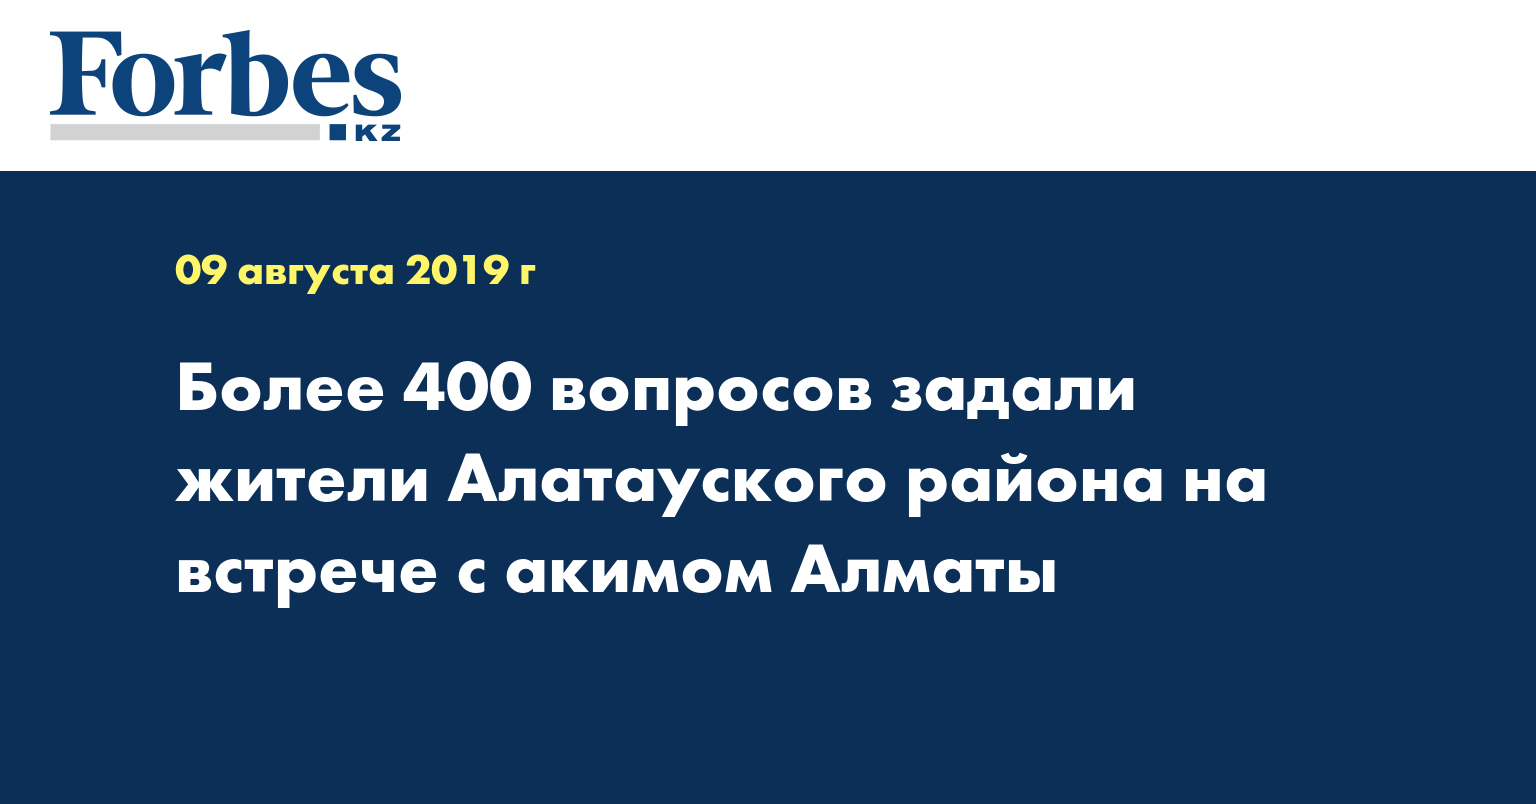 Более 400 вопросов задали жители Алатауского района на встрече с акимом Алматы